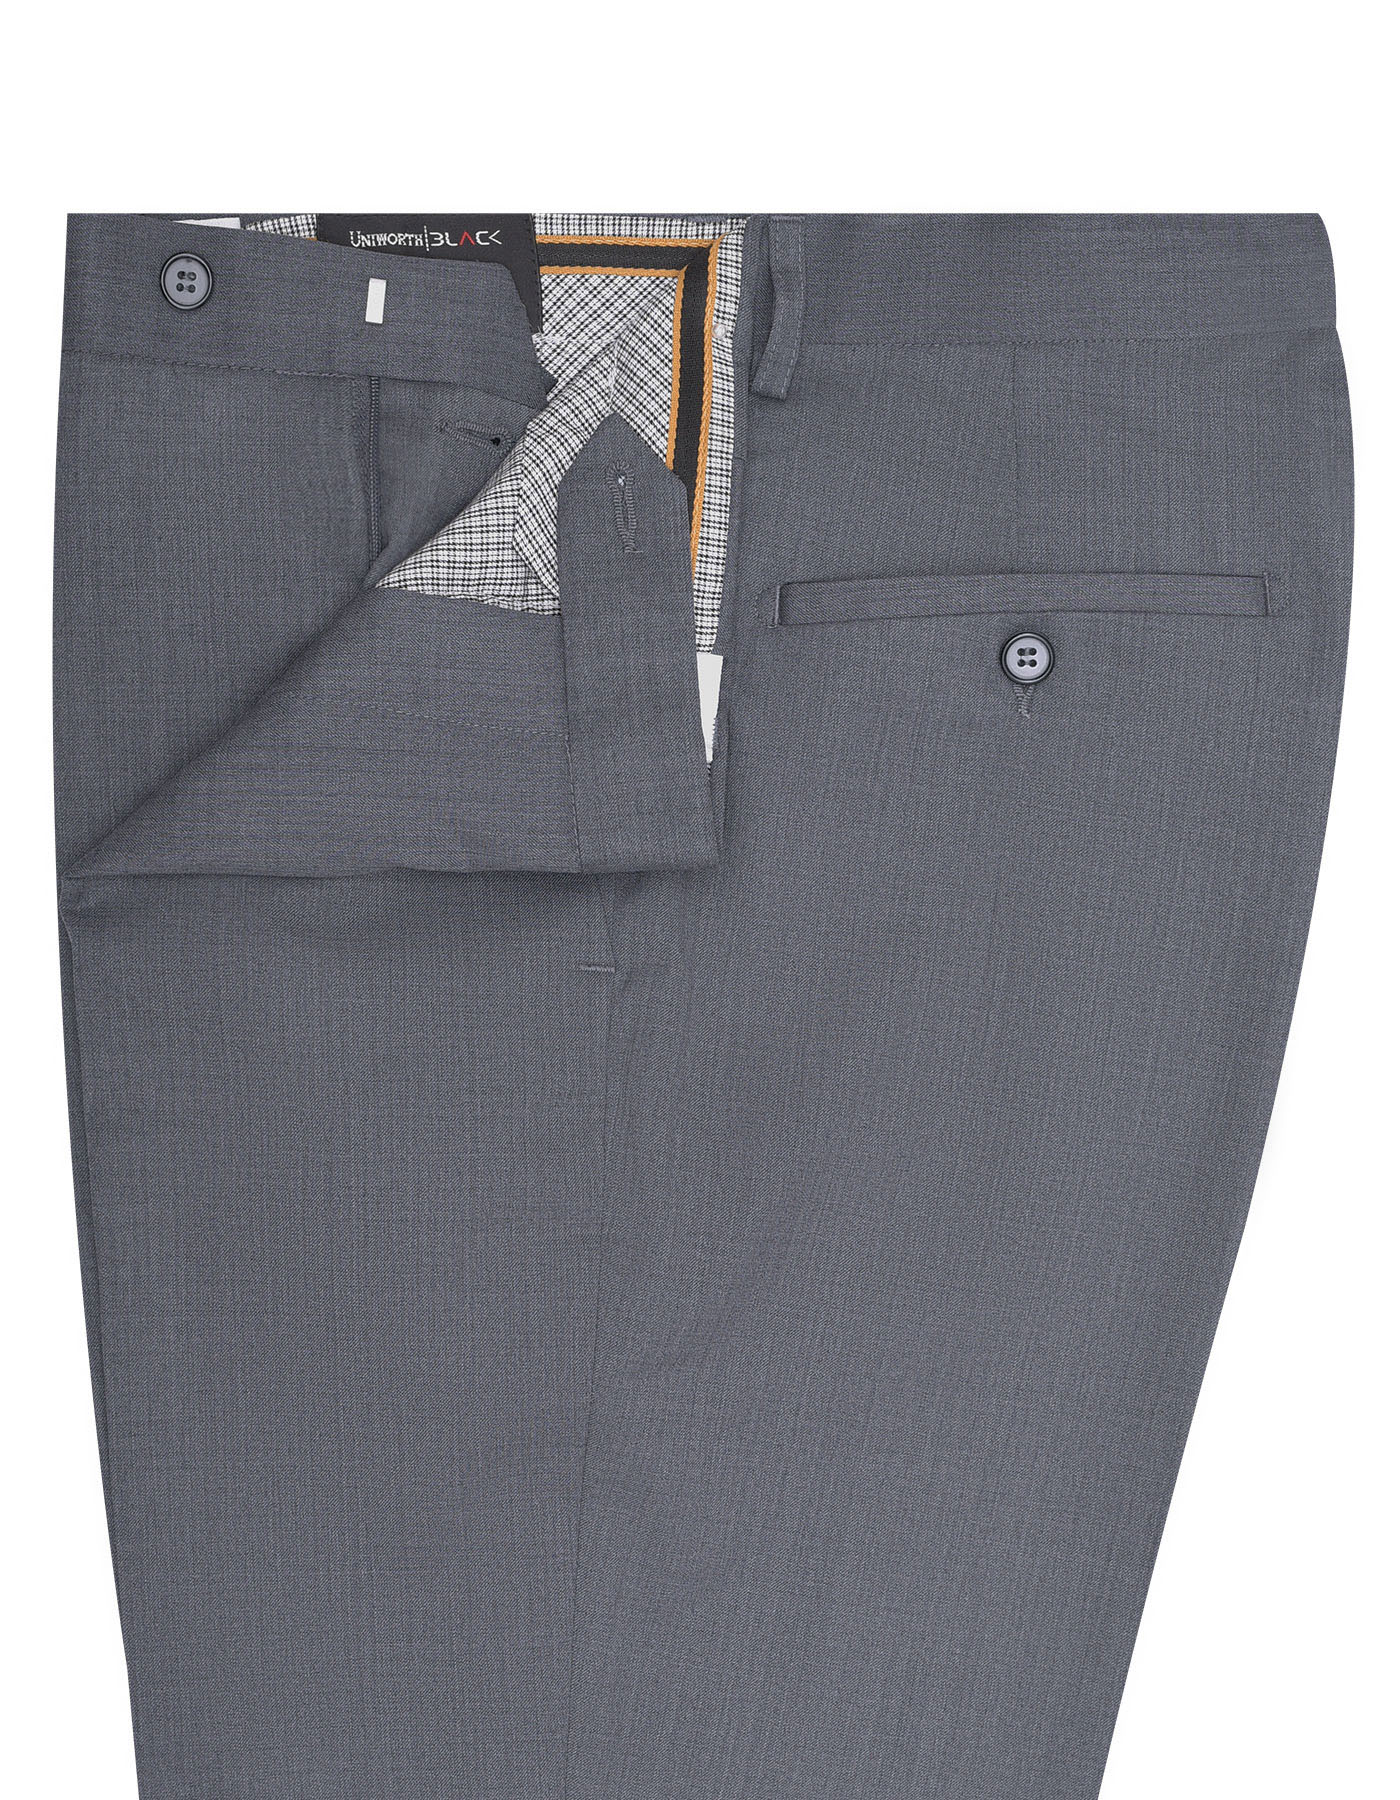 Trousers for Men Online  WINGS Super Grey Trouser for Men in Pakistan